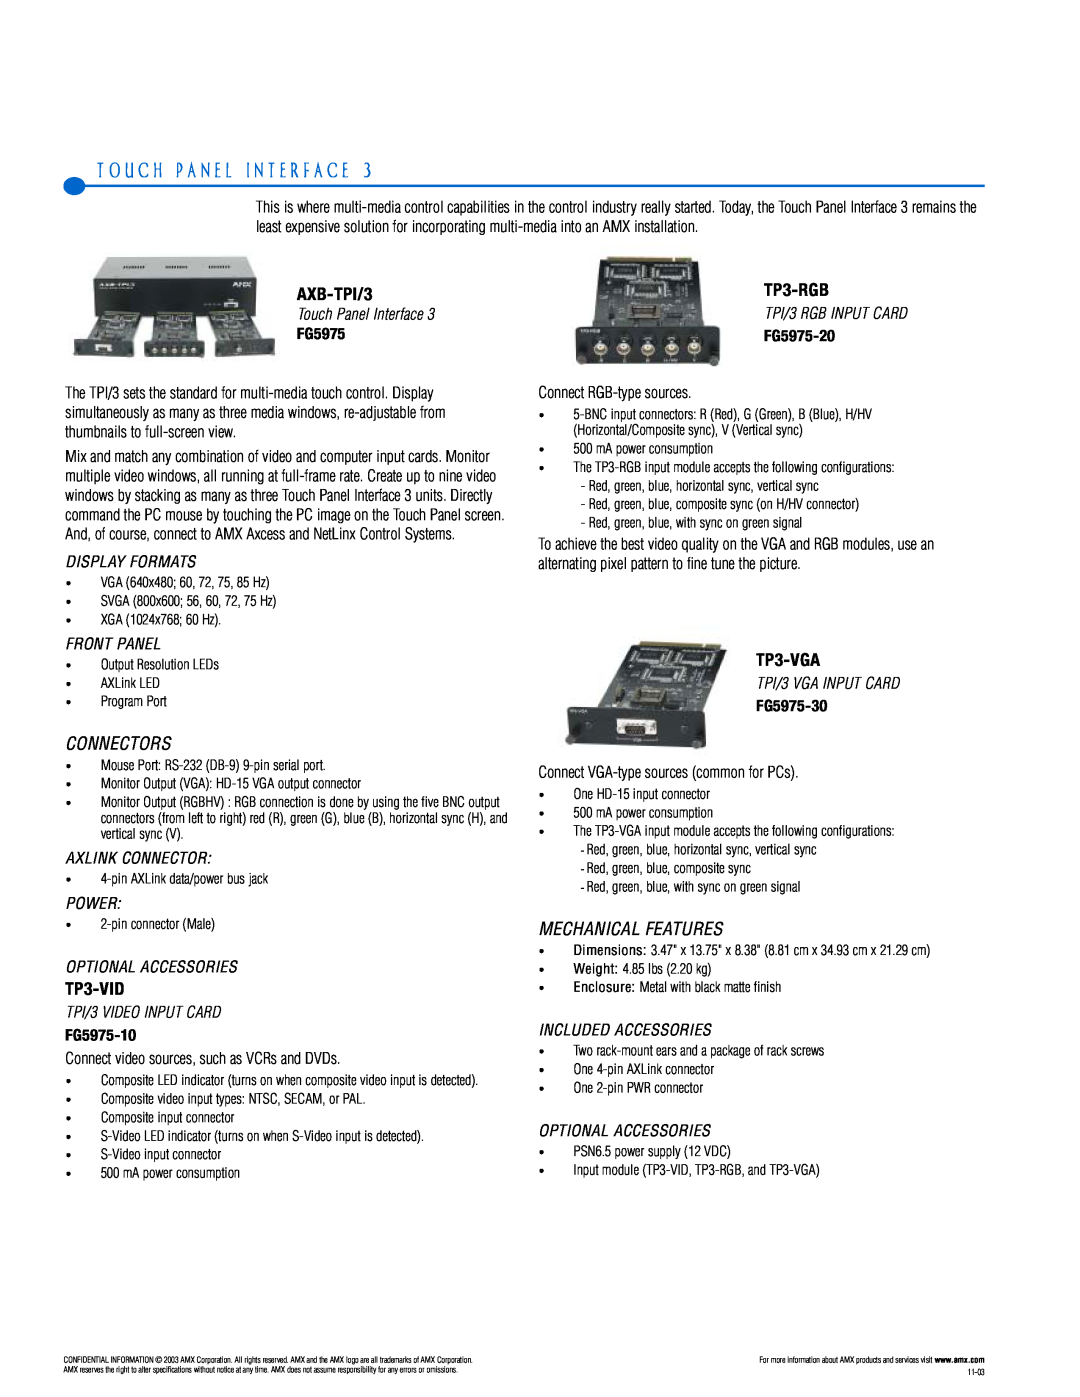 AMX PTM-D15 T O U C H P A N E L I N T E R F A C E, AXB-TPI/3, Connectors, TP3-VID, TP3-RGB, TP3-VGA, Mechanical Features 